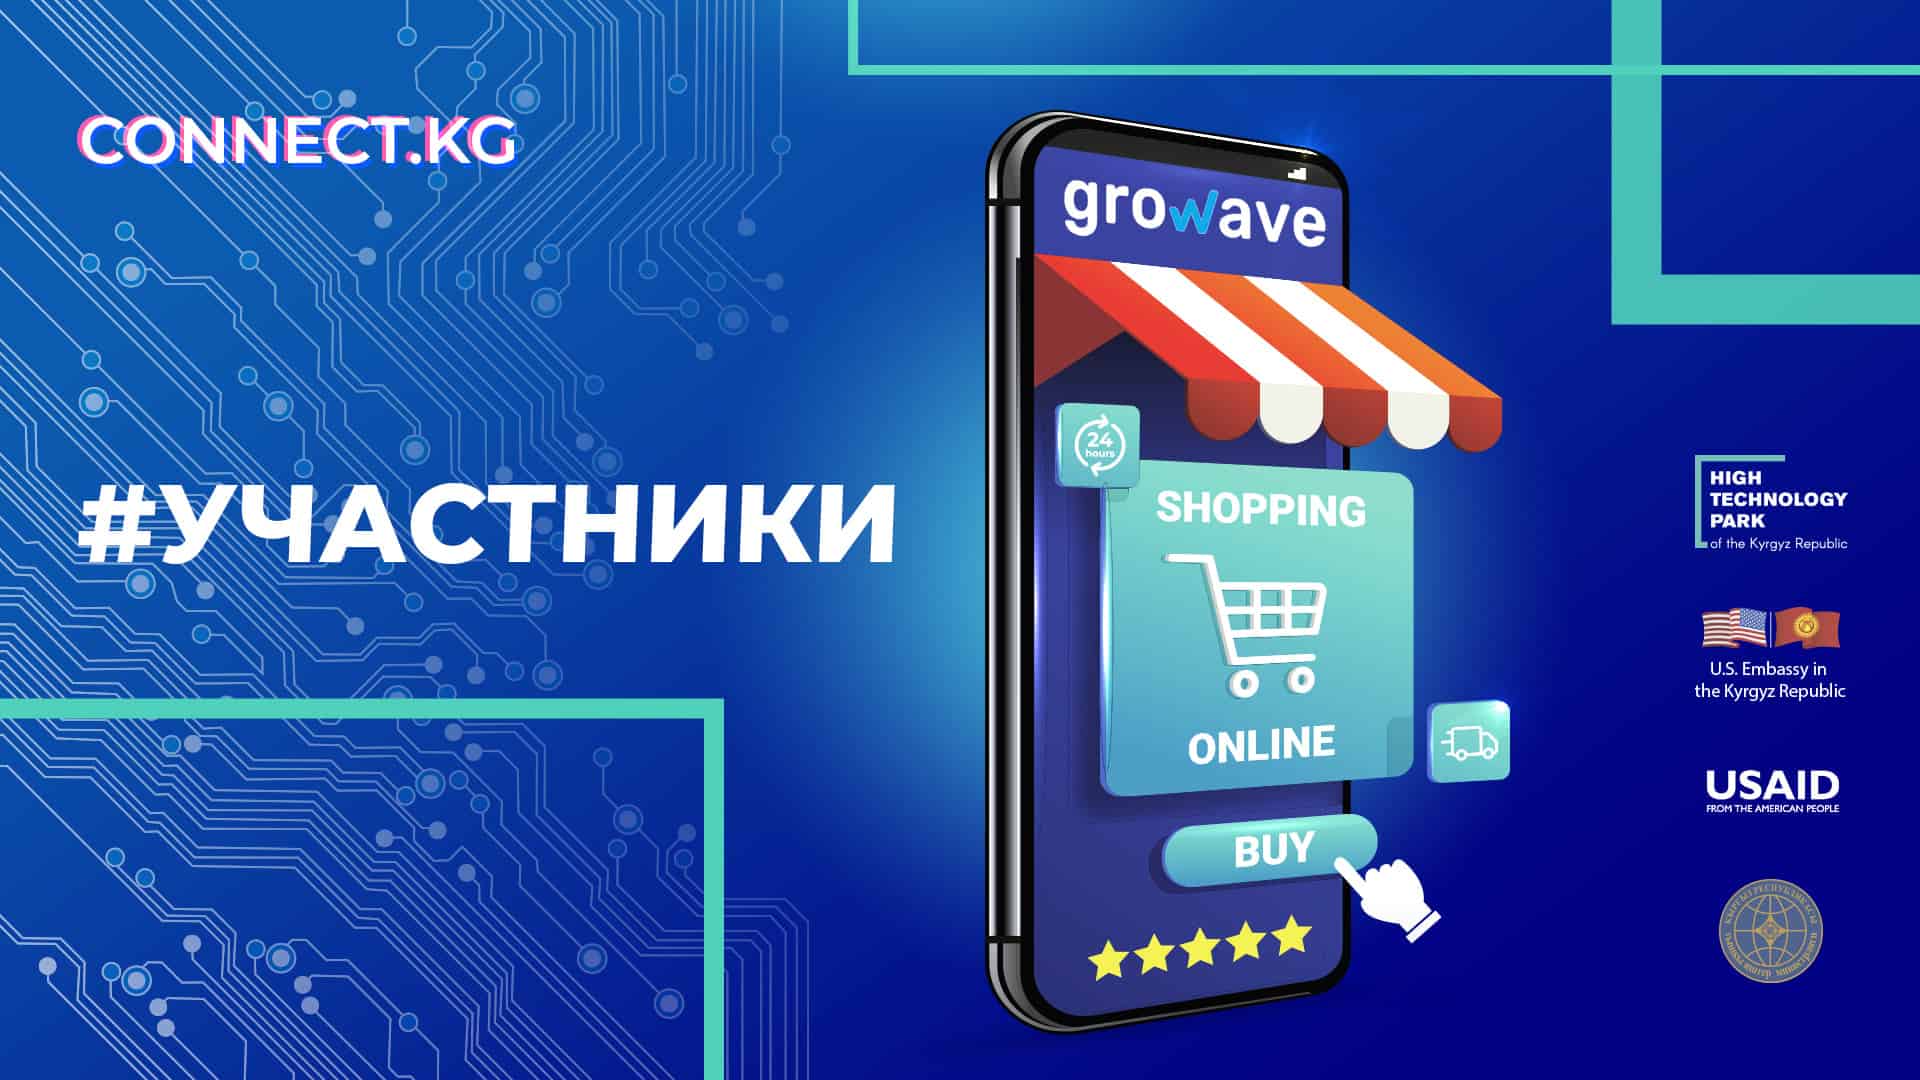 Разработчик платформы для Shopify — кыргызстанская Growave — примет участие в выставке Connect.KG